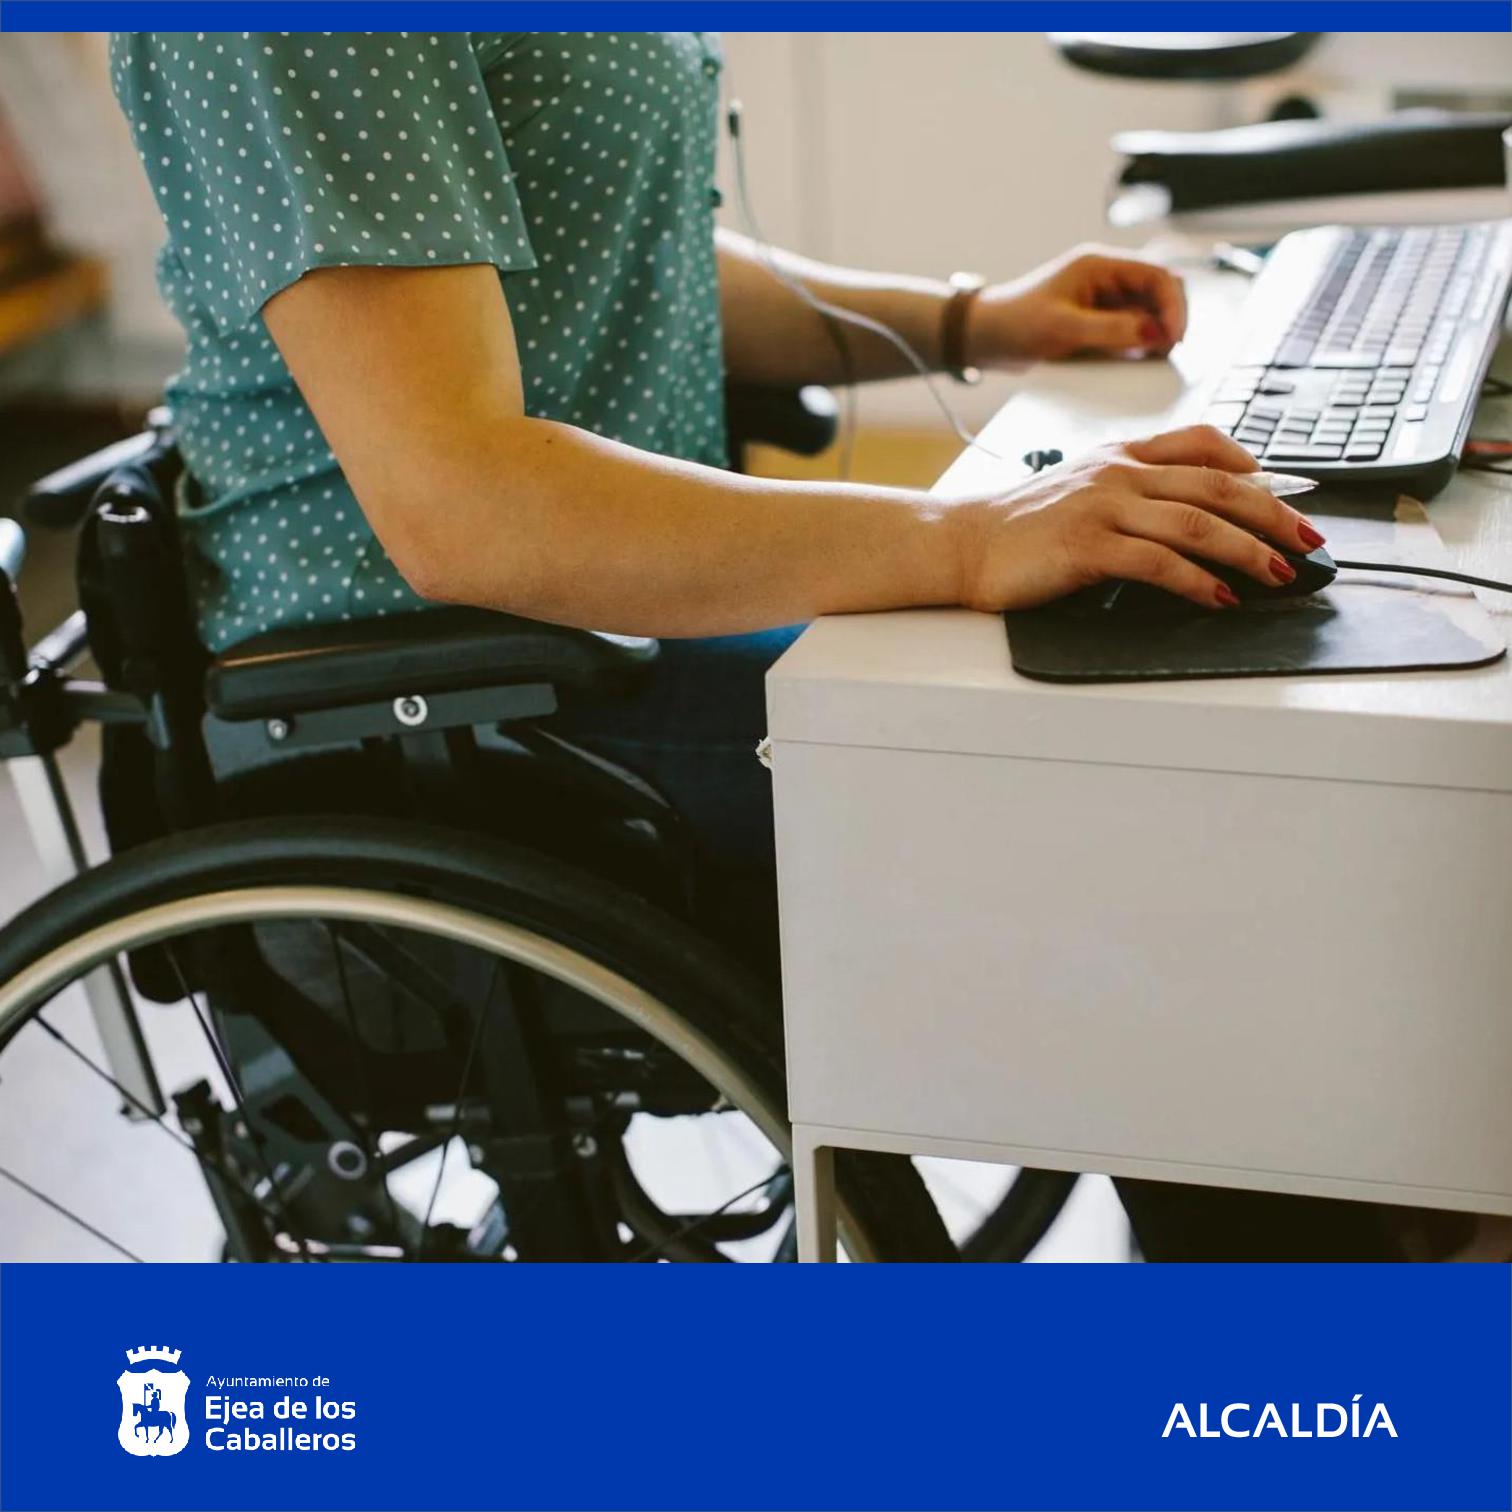 En este momento estás viendo Declaración Institucional sobre los Derechos de las Personas con Discapacidad